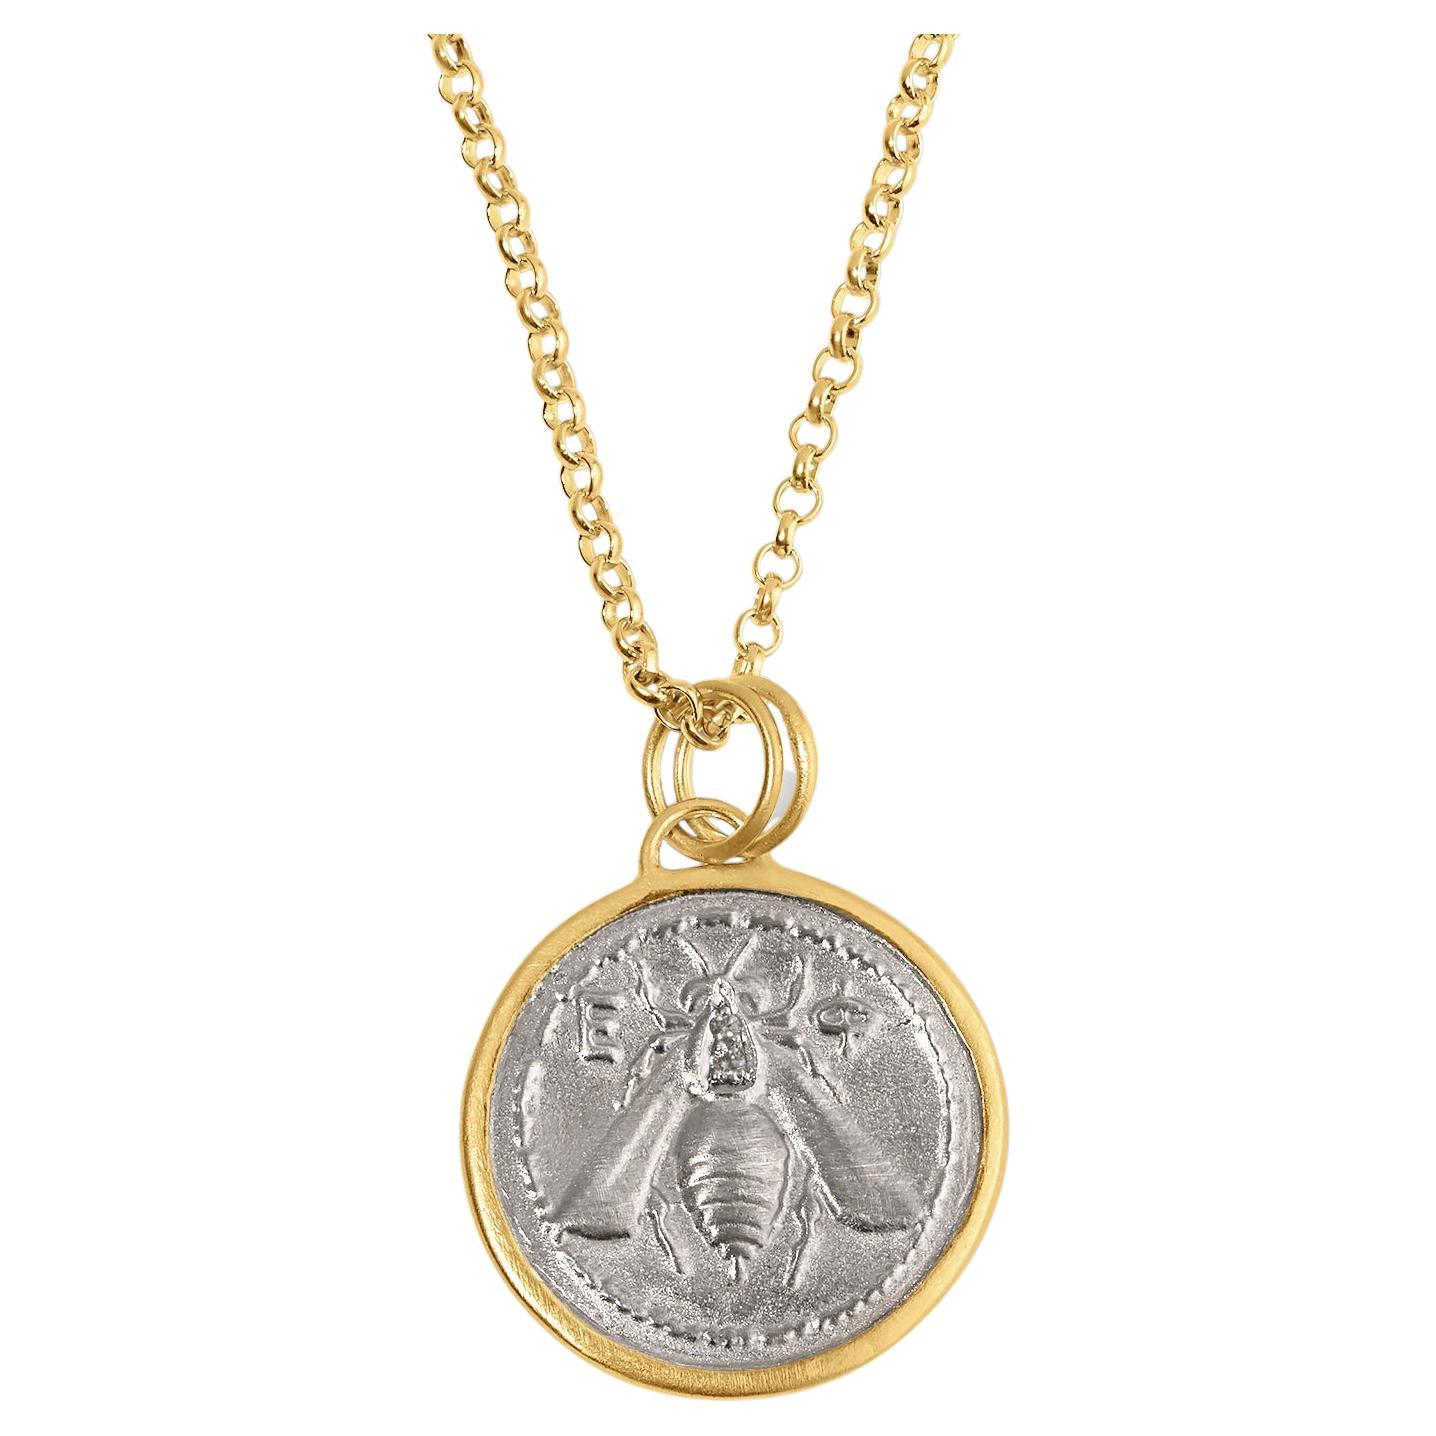 Doppelseitige Bienenmünze mit Hirsch- und Diamantdetails aus 24 Karat Gold und Silber von Kurtulan